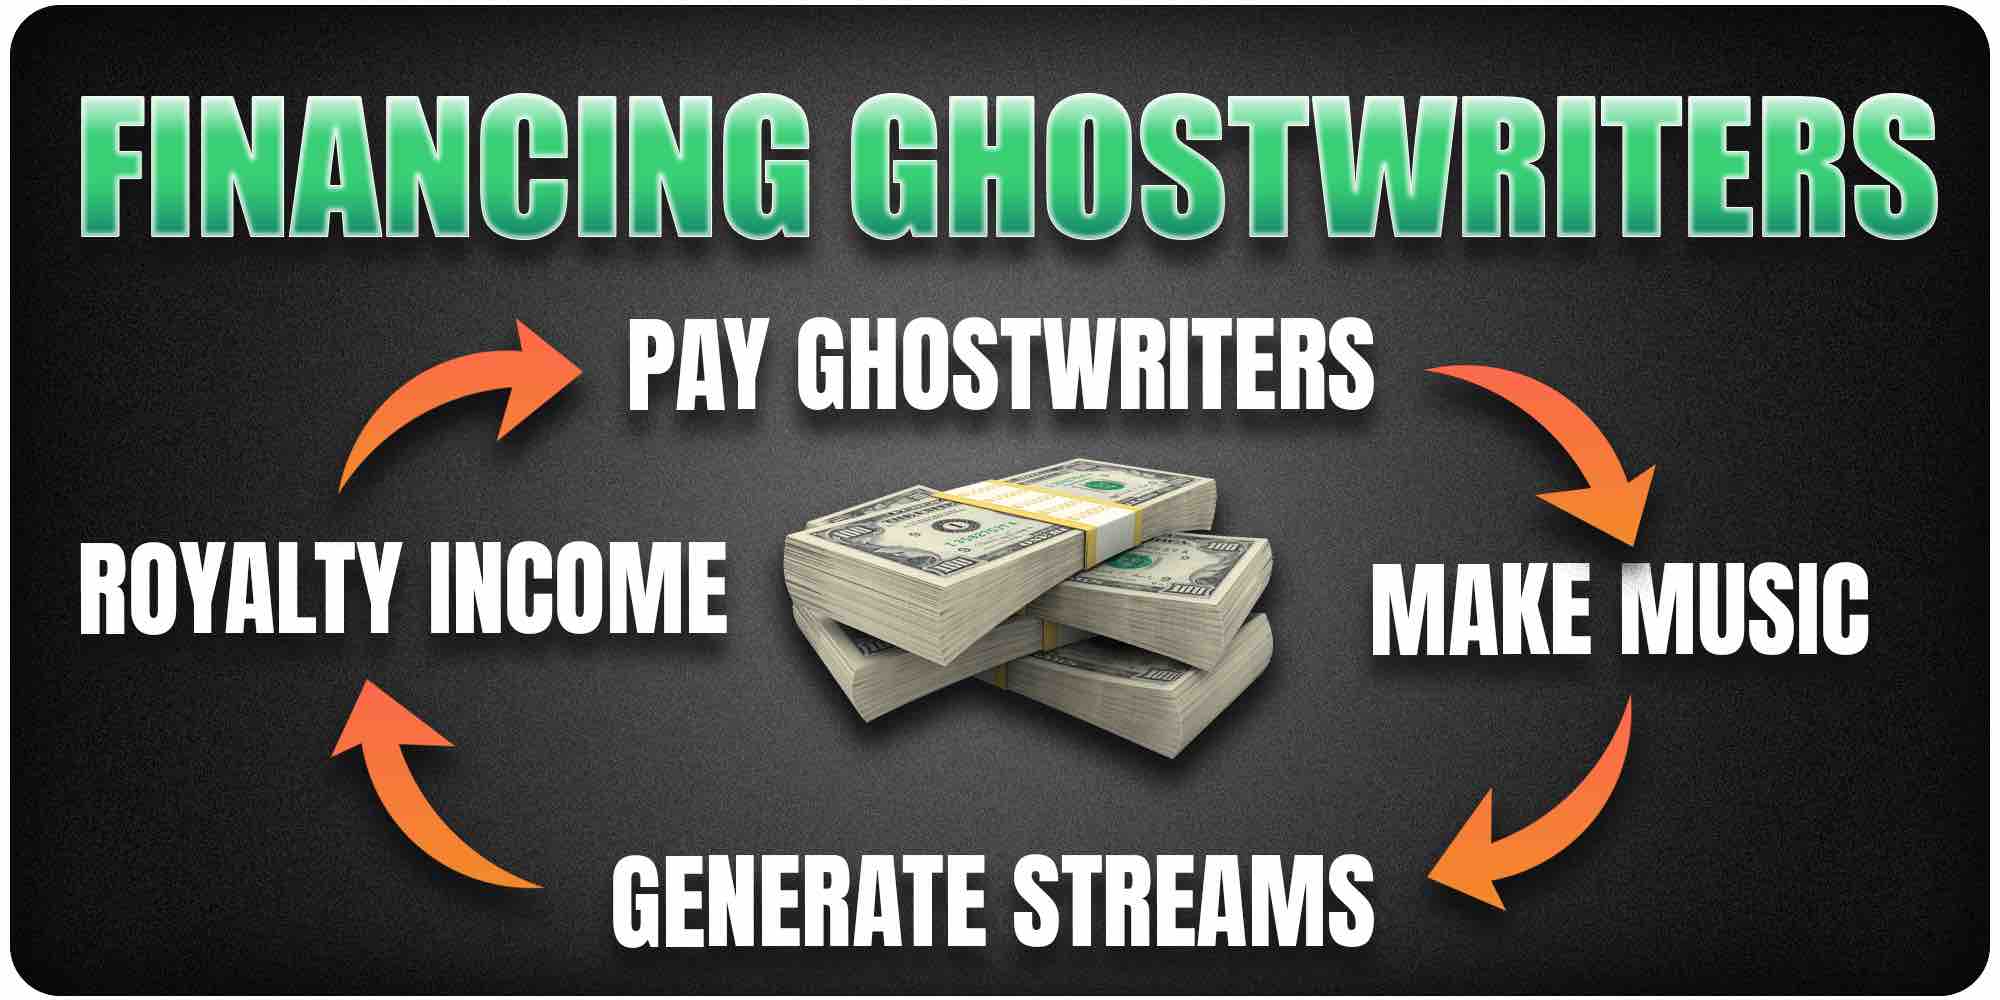 Financing ghostwriters